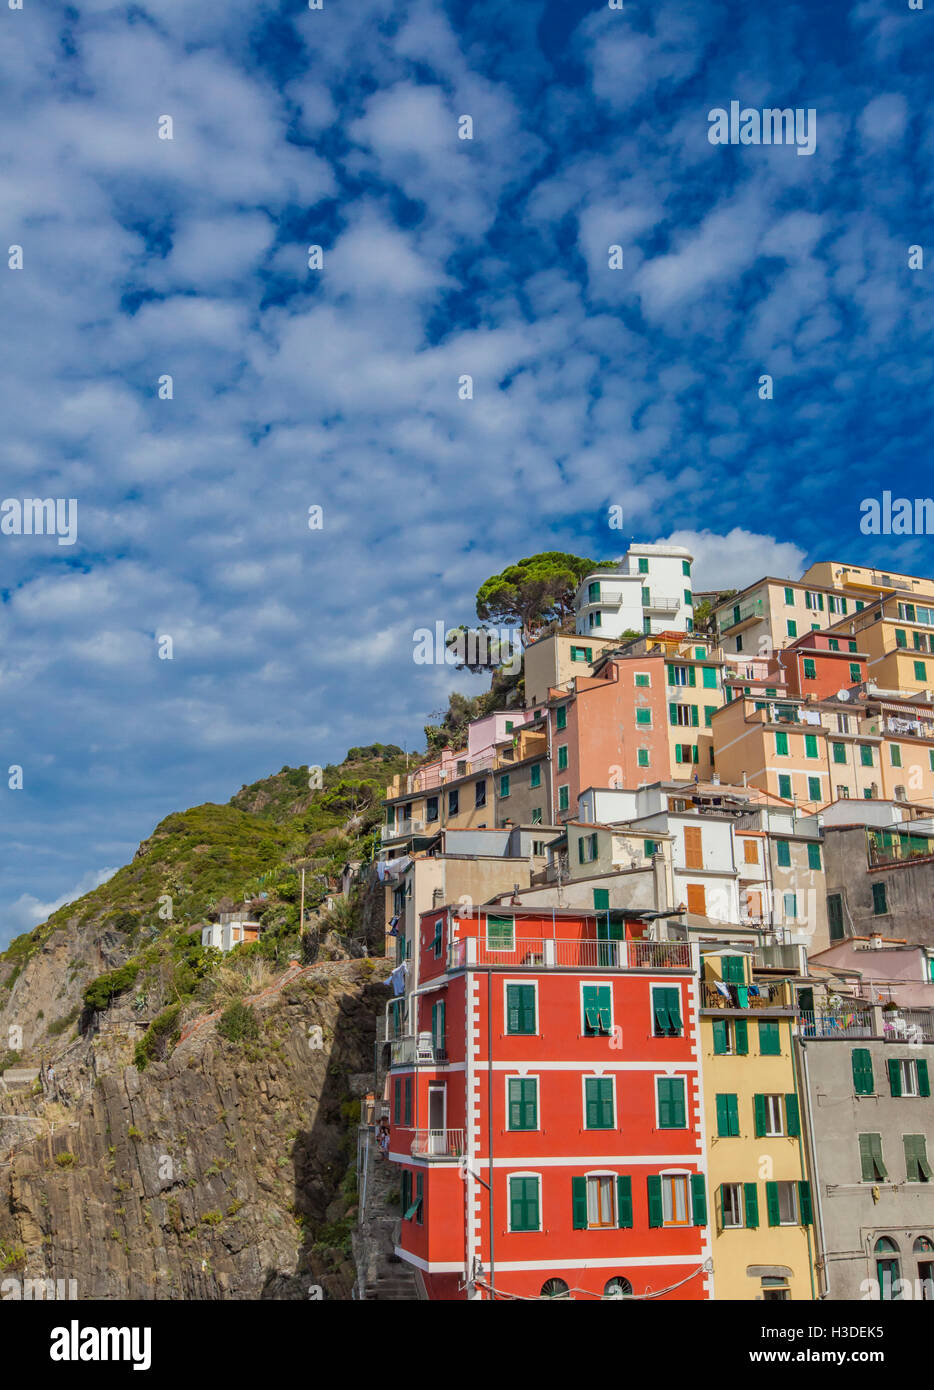 Riomaggiore è uno di cinque famosi villaggi colorati delle Cinque Terre in Italia, sospesa tra la terra e il mare a picco sulla scogliera. Foto Stock